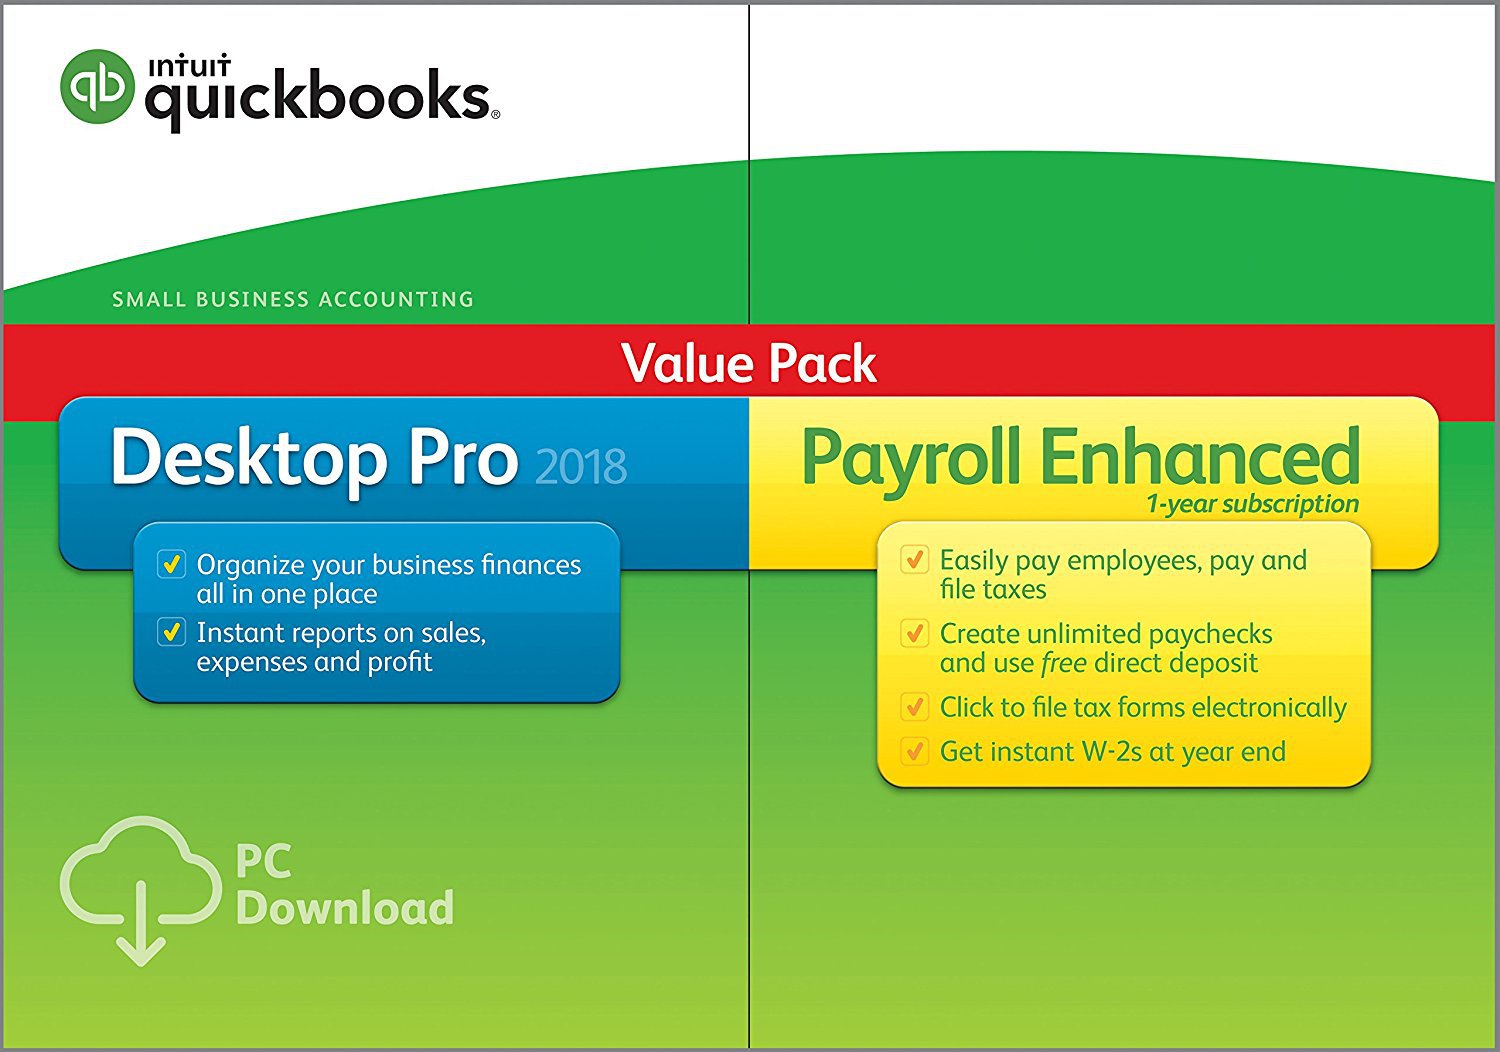 quickbooks mac torrent 17.1